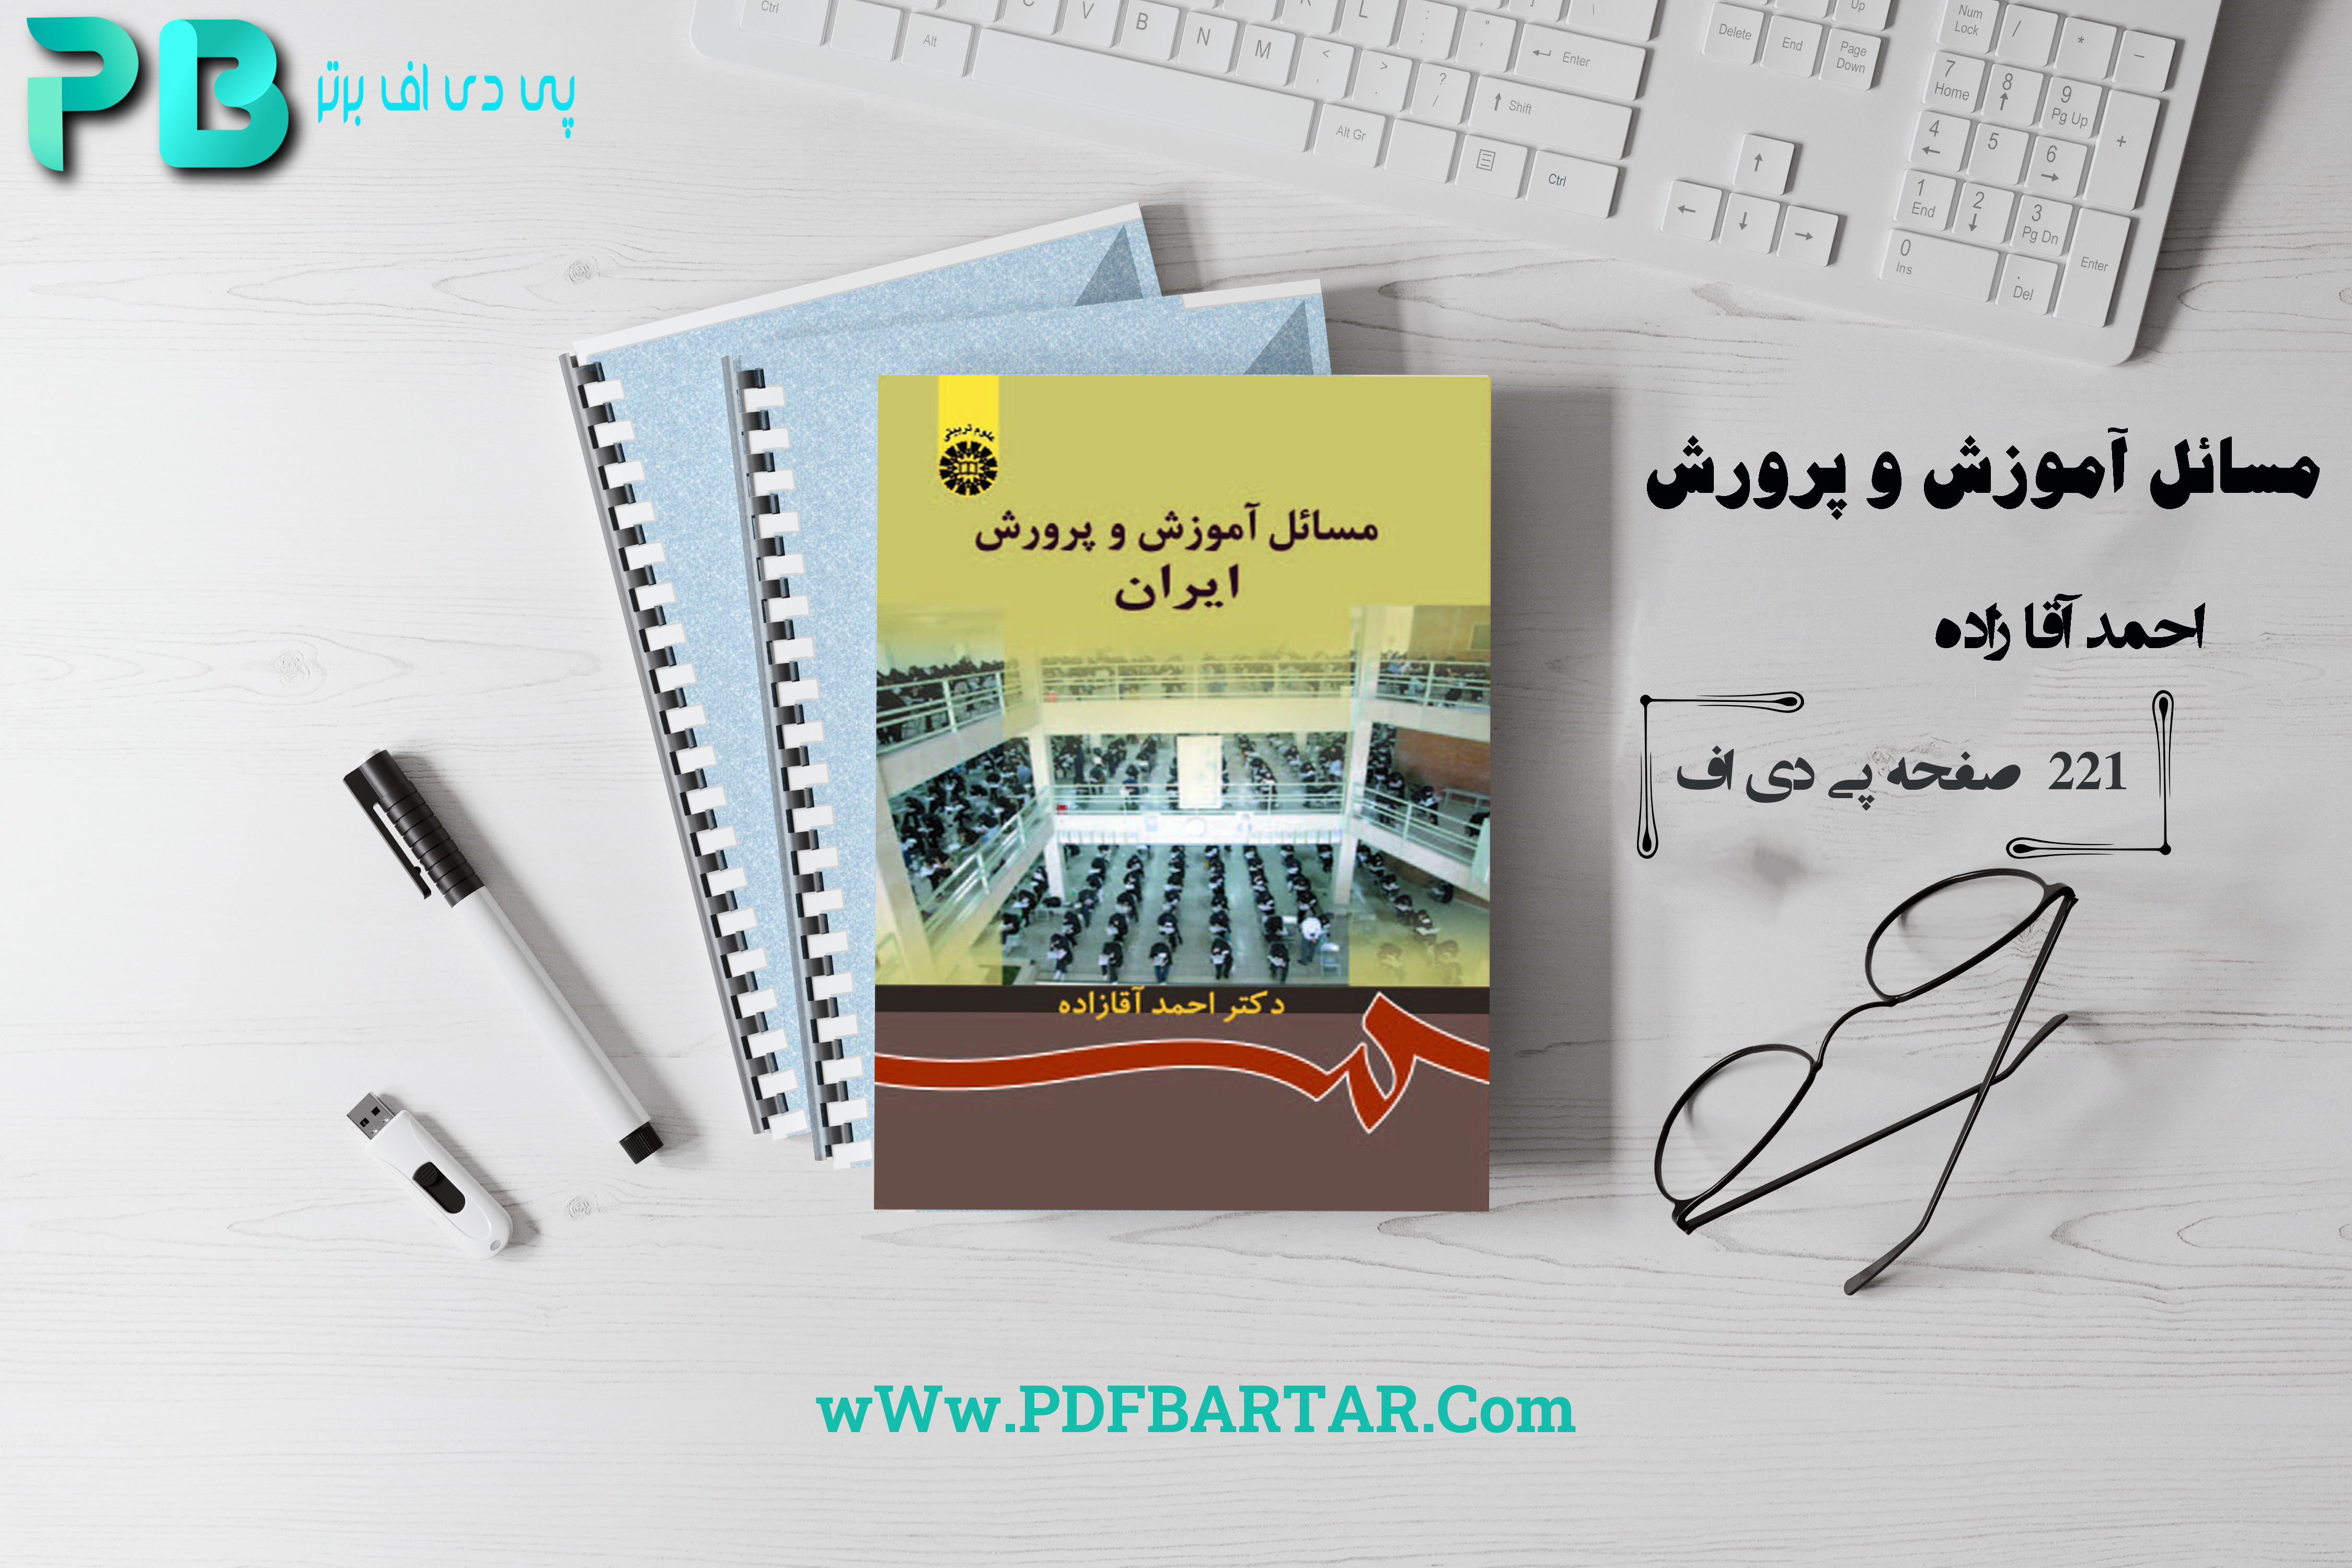 دانلود پی دی اف کتاب مسائل آموزش و پرورش ایران - پی دی اف برتر